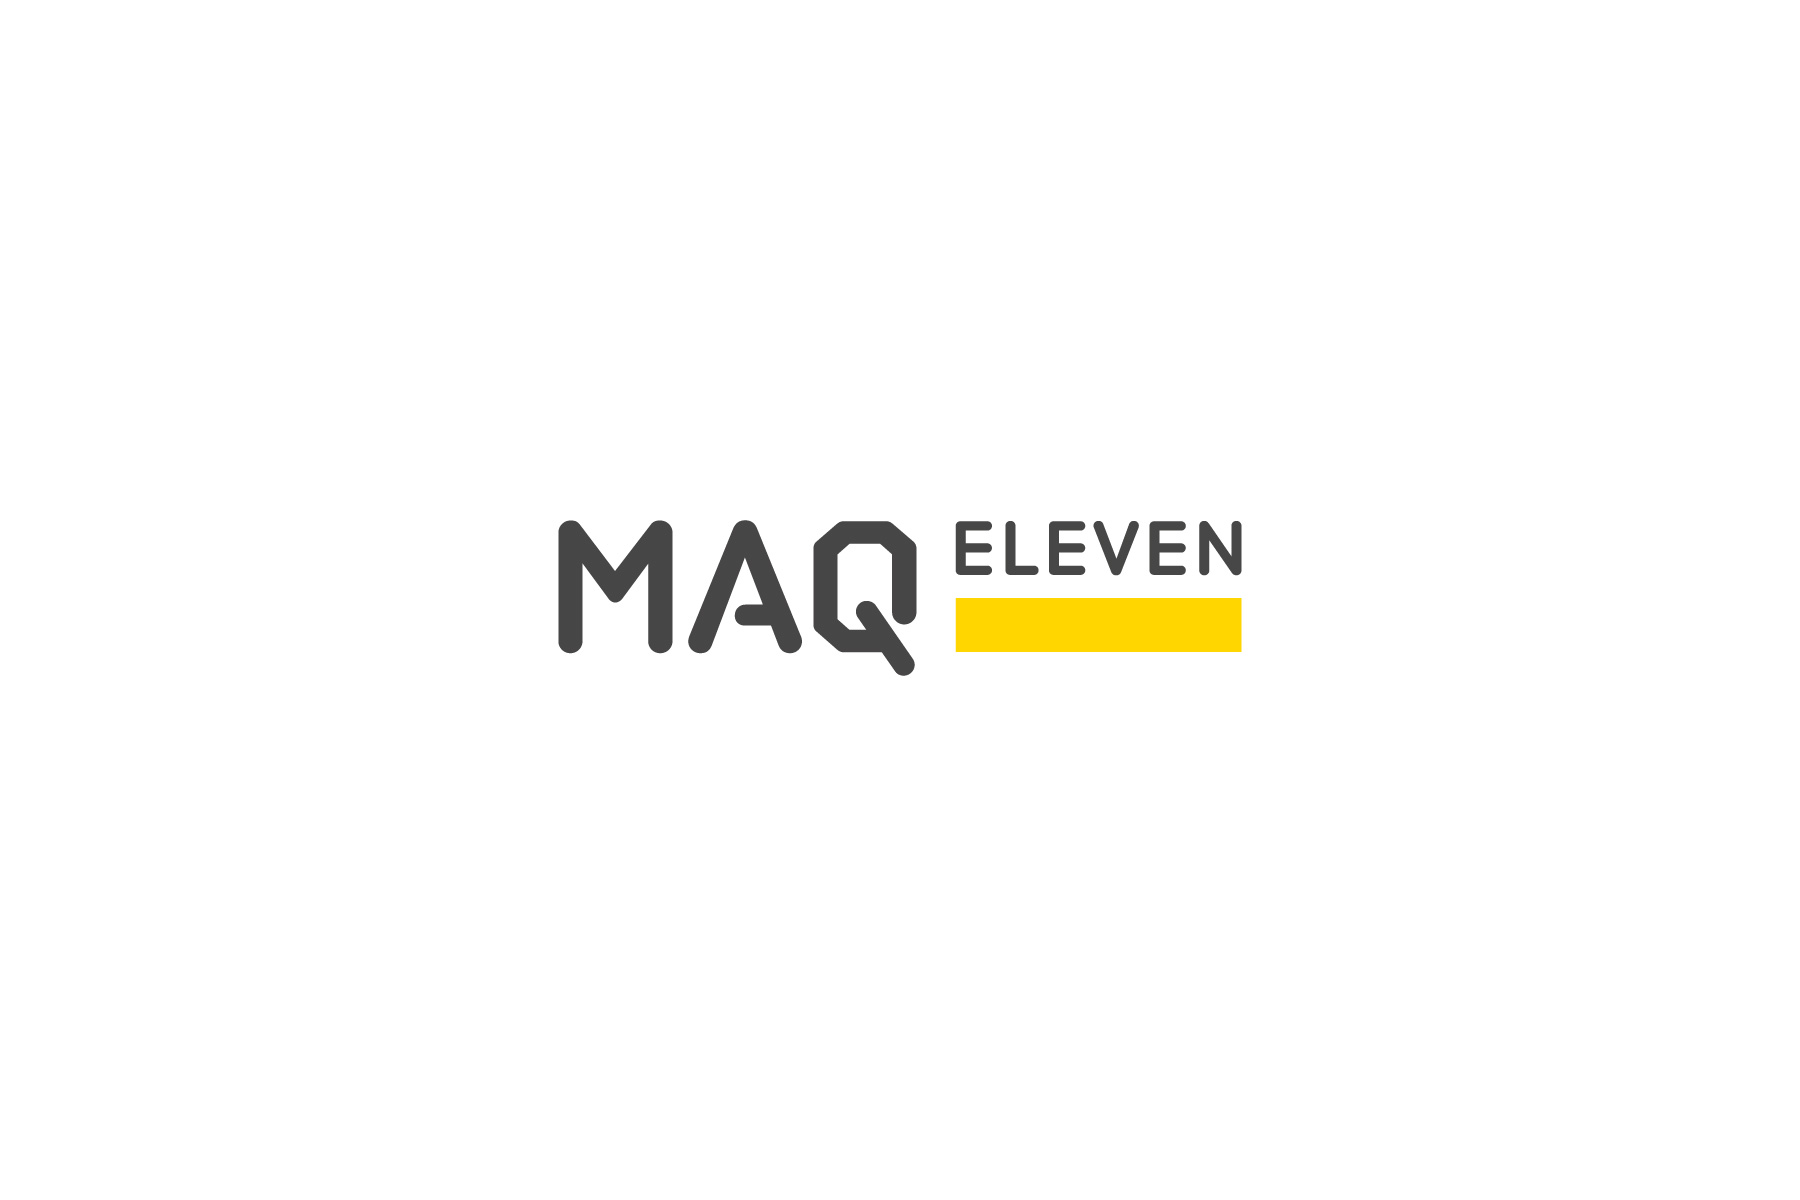 MAQ Eleven